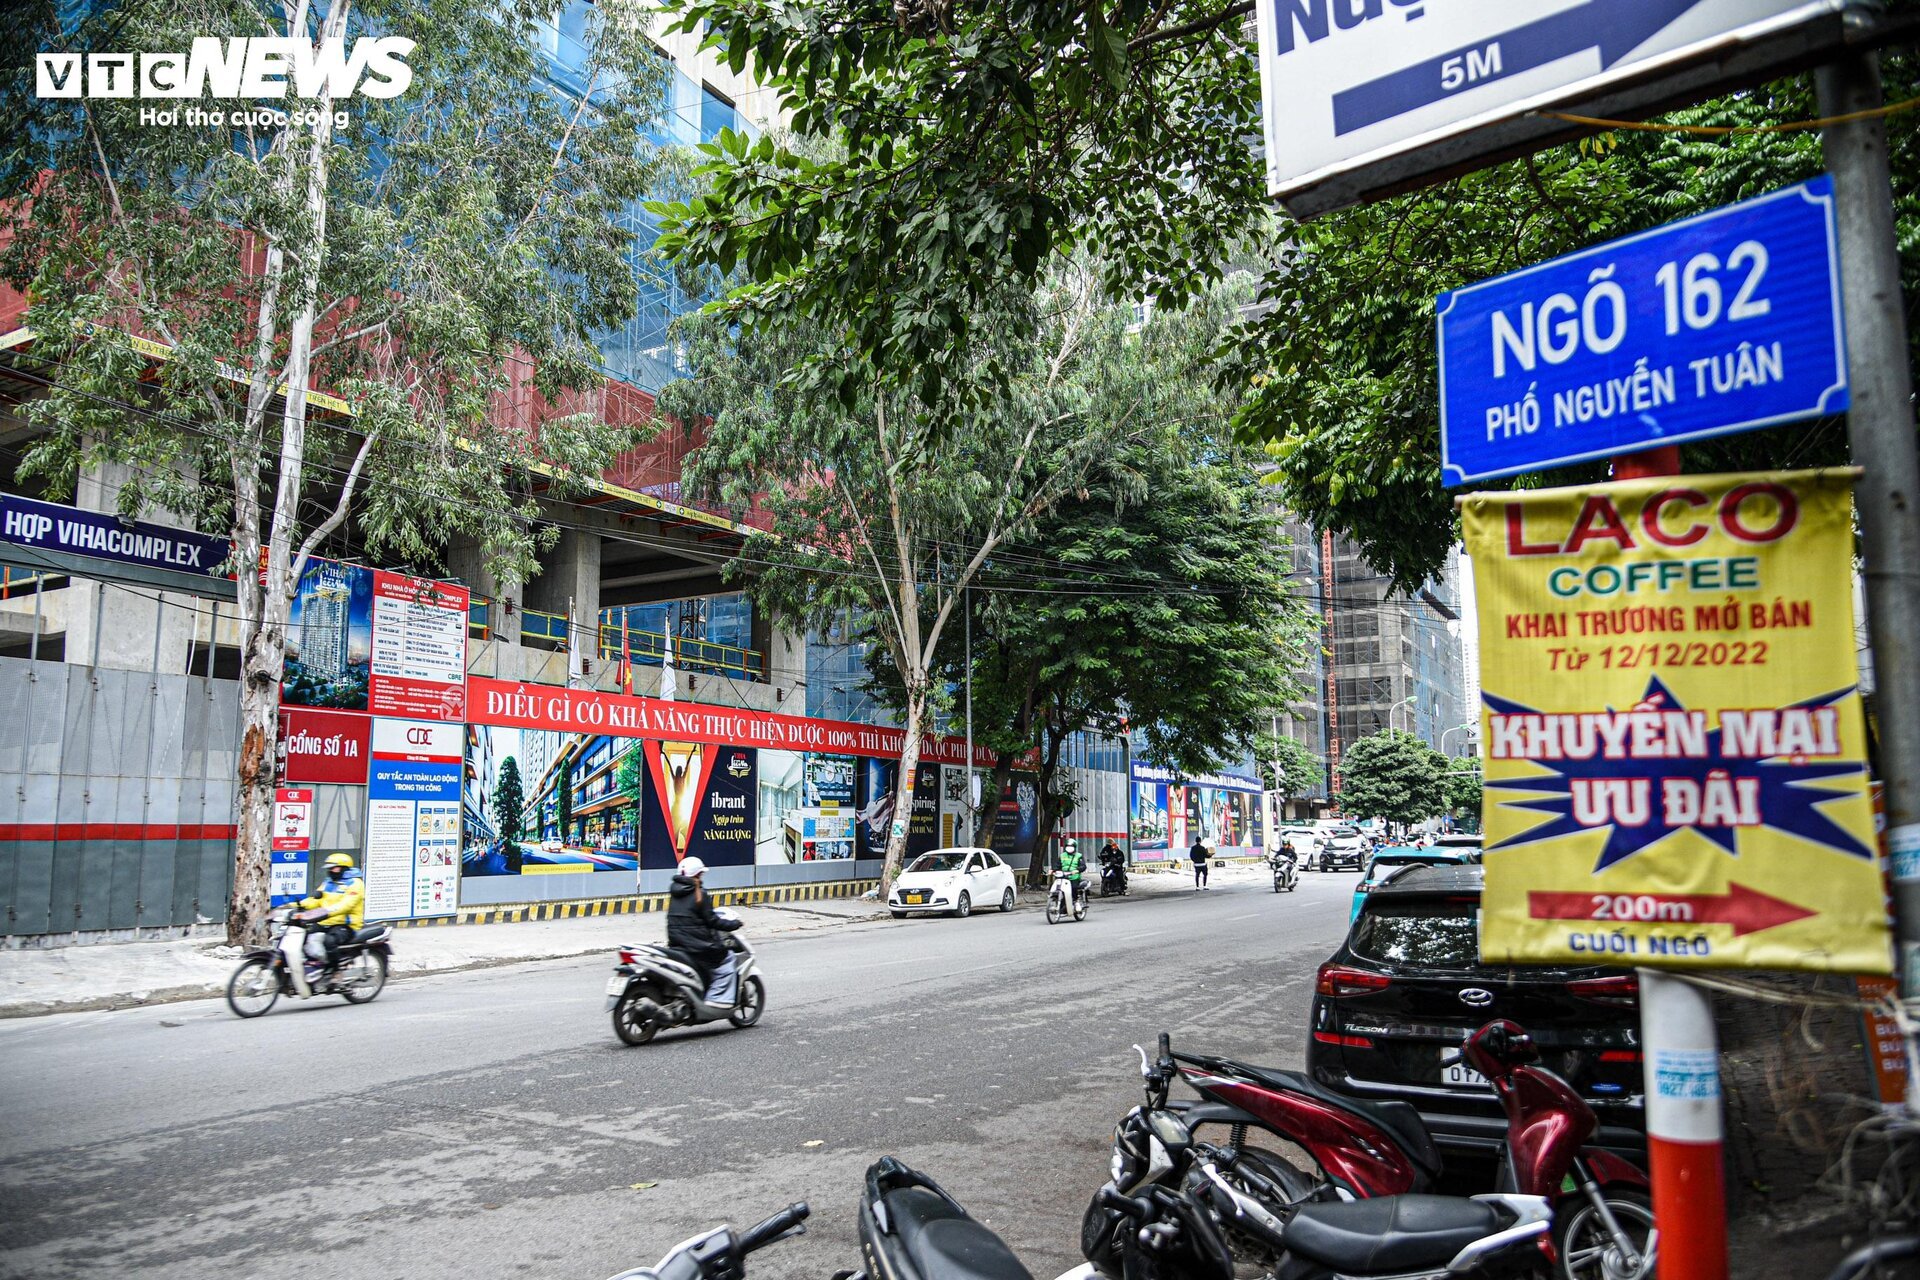 Cận cảnh tuyến đường sắp được Hà Nội mở rộng hơn 20m để giảm ùn tắc - Ảnh 5.